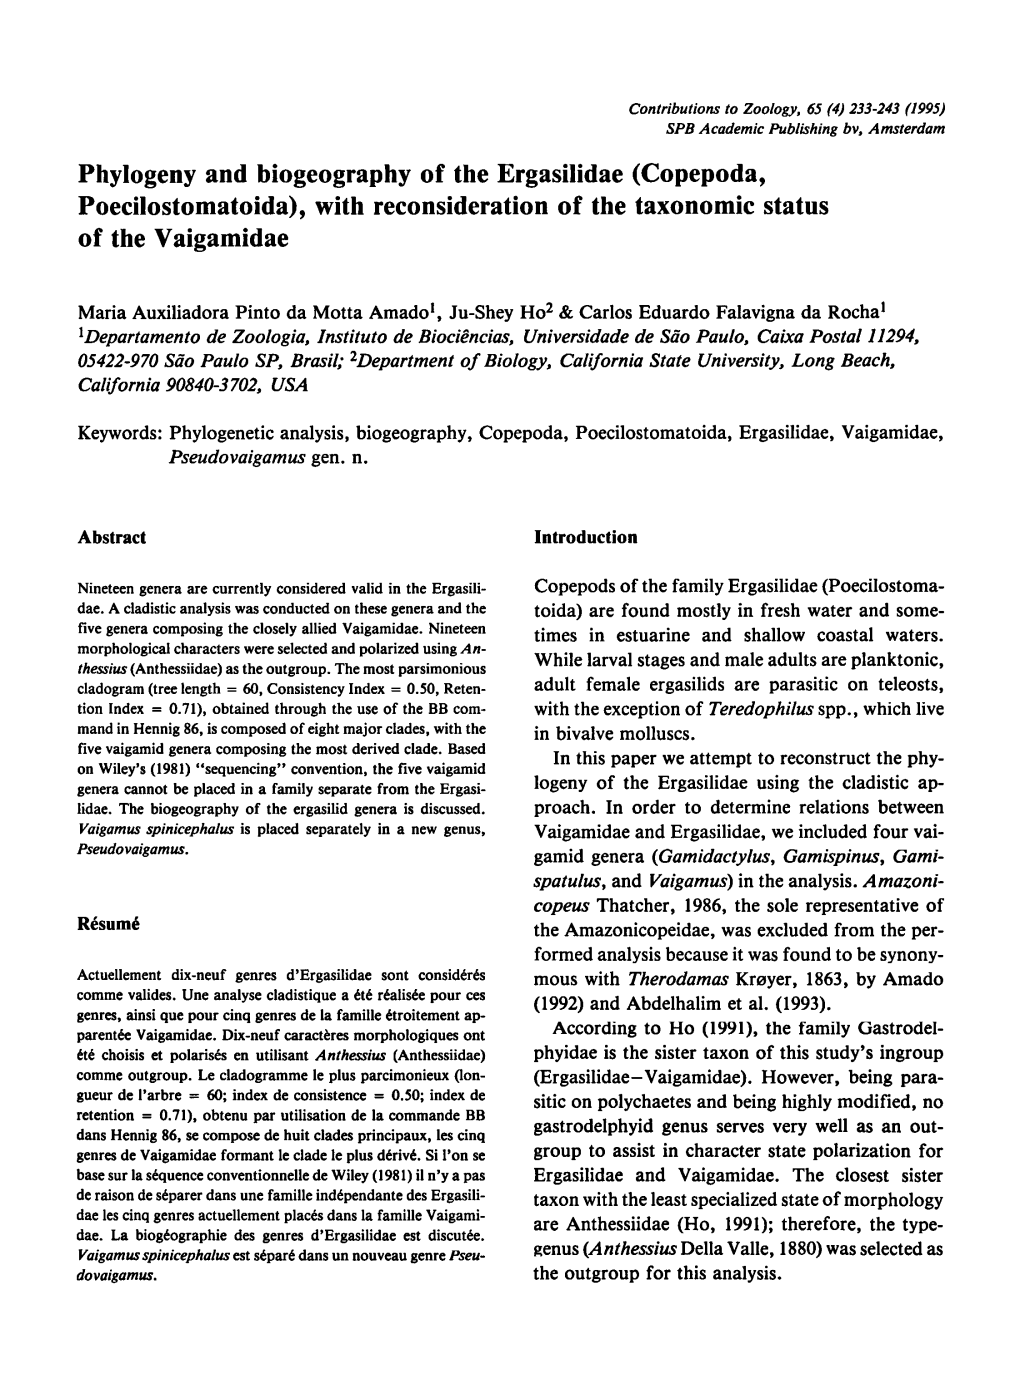 Phylogeny and Biogeography of the Ergasilidae (Copepoda